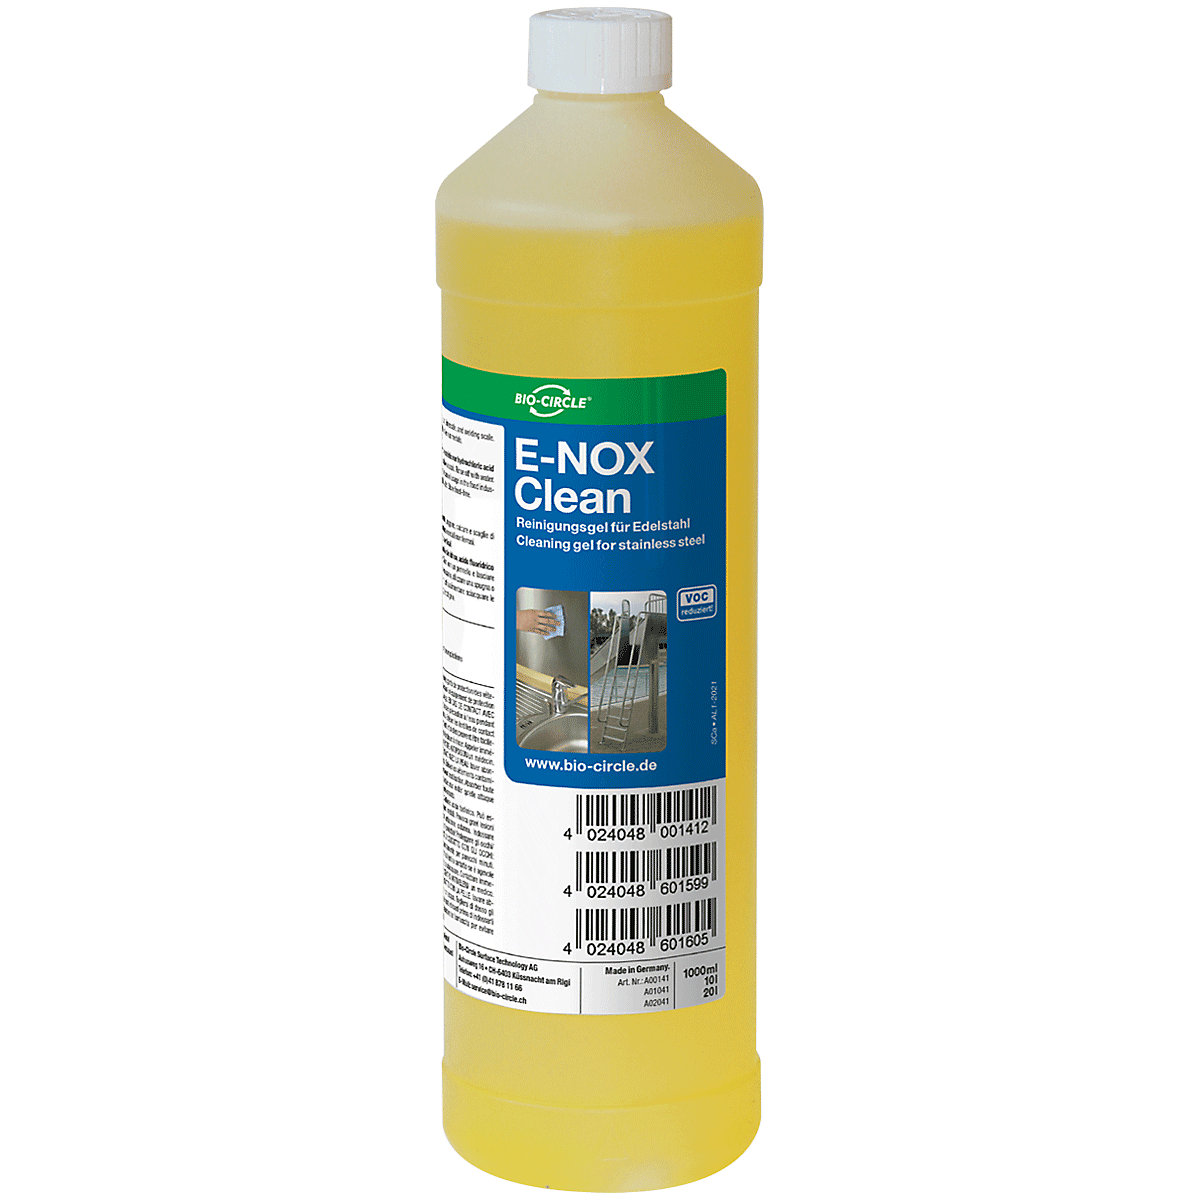 E-NOX Clean vízkő- és rozsdaeltávolító - Bio-Circle